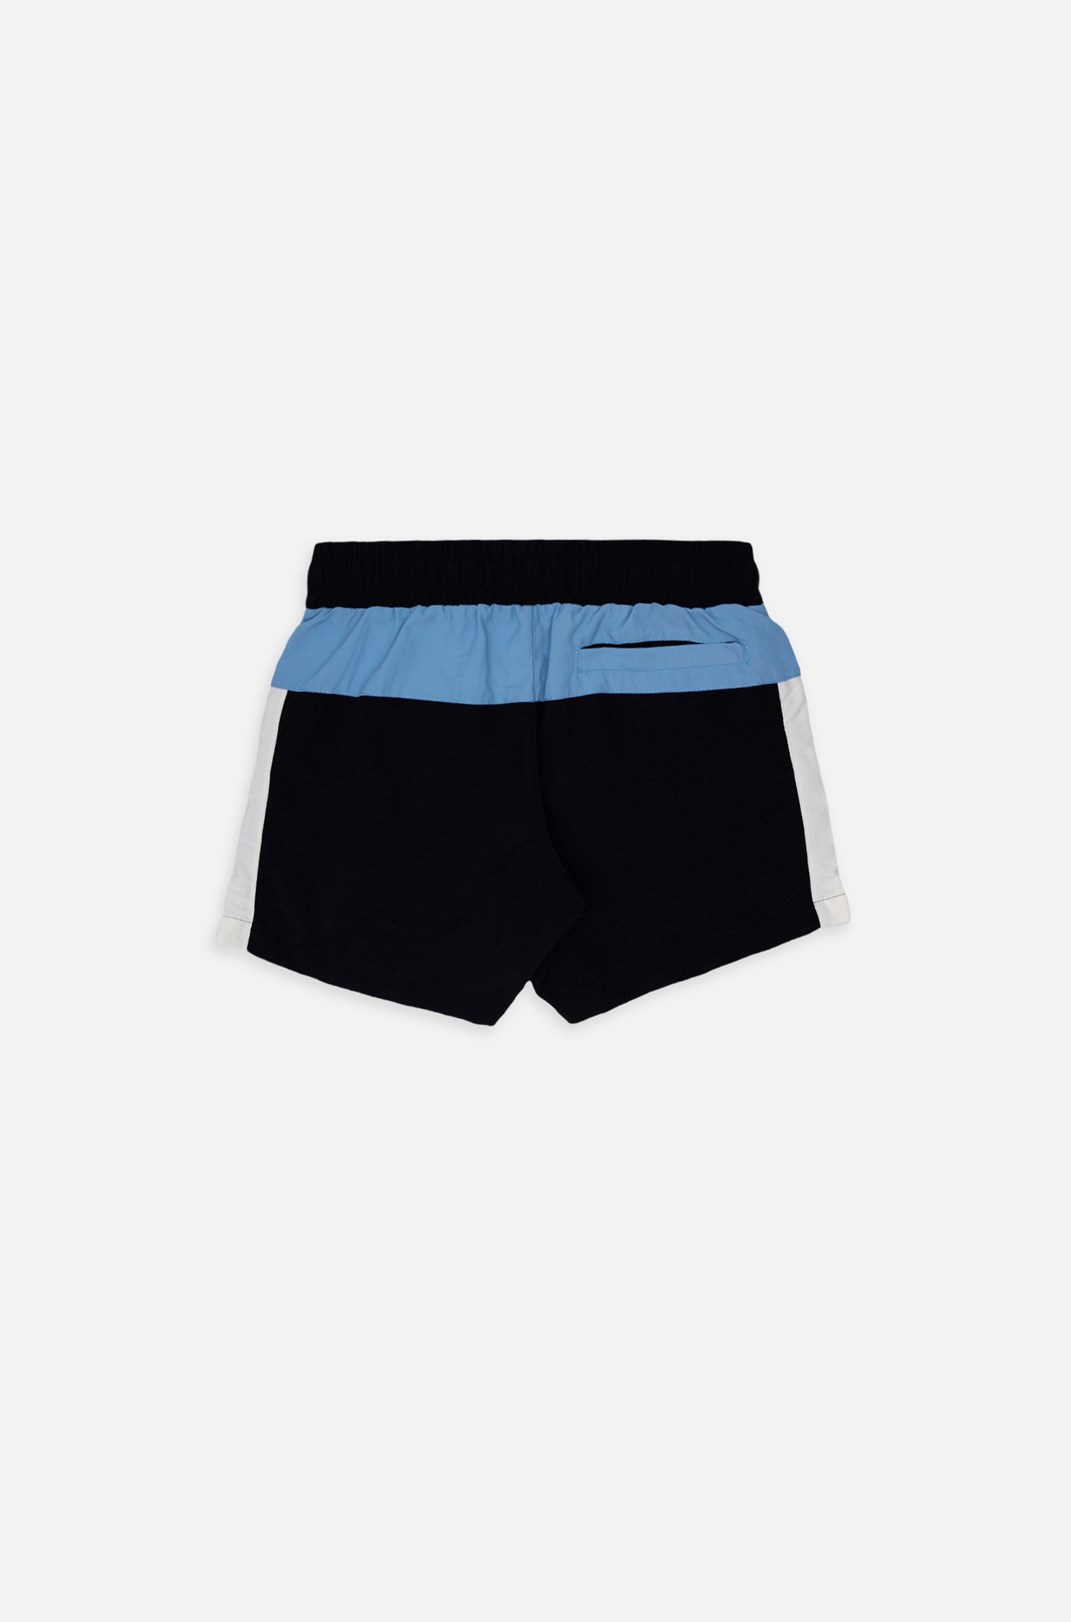 Shorts Approve Retropia Azul e Preto